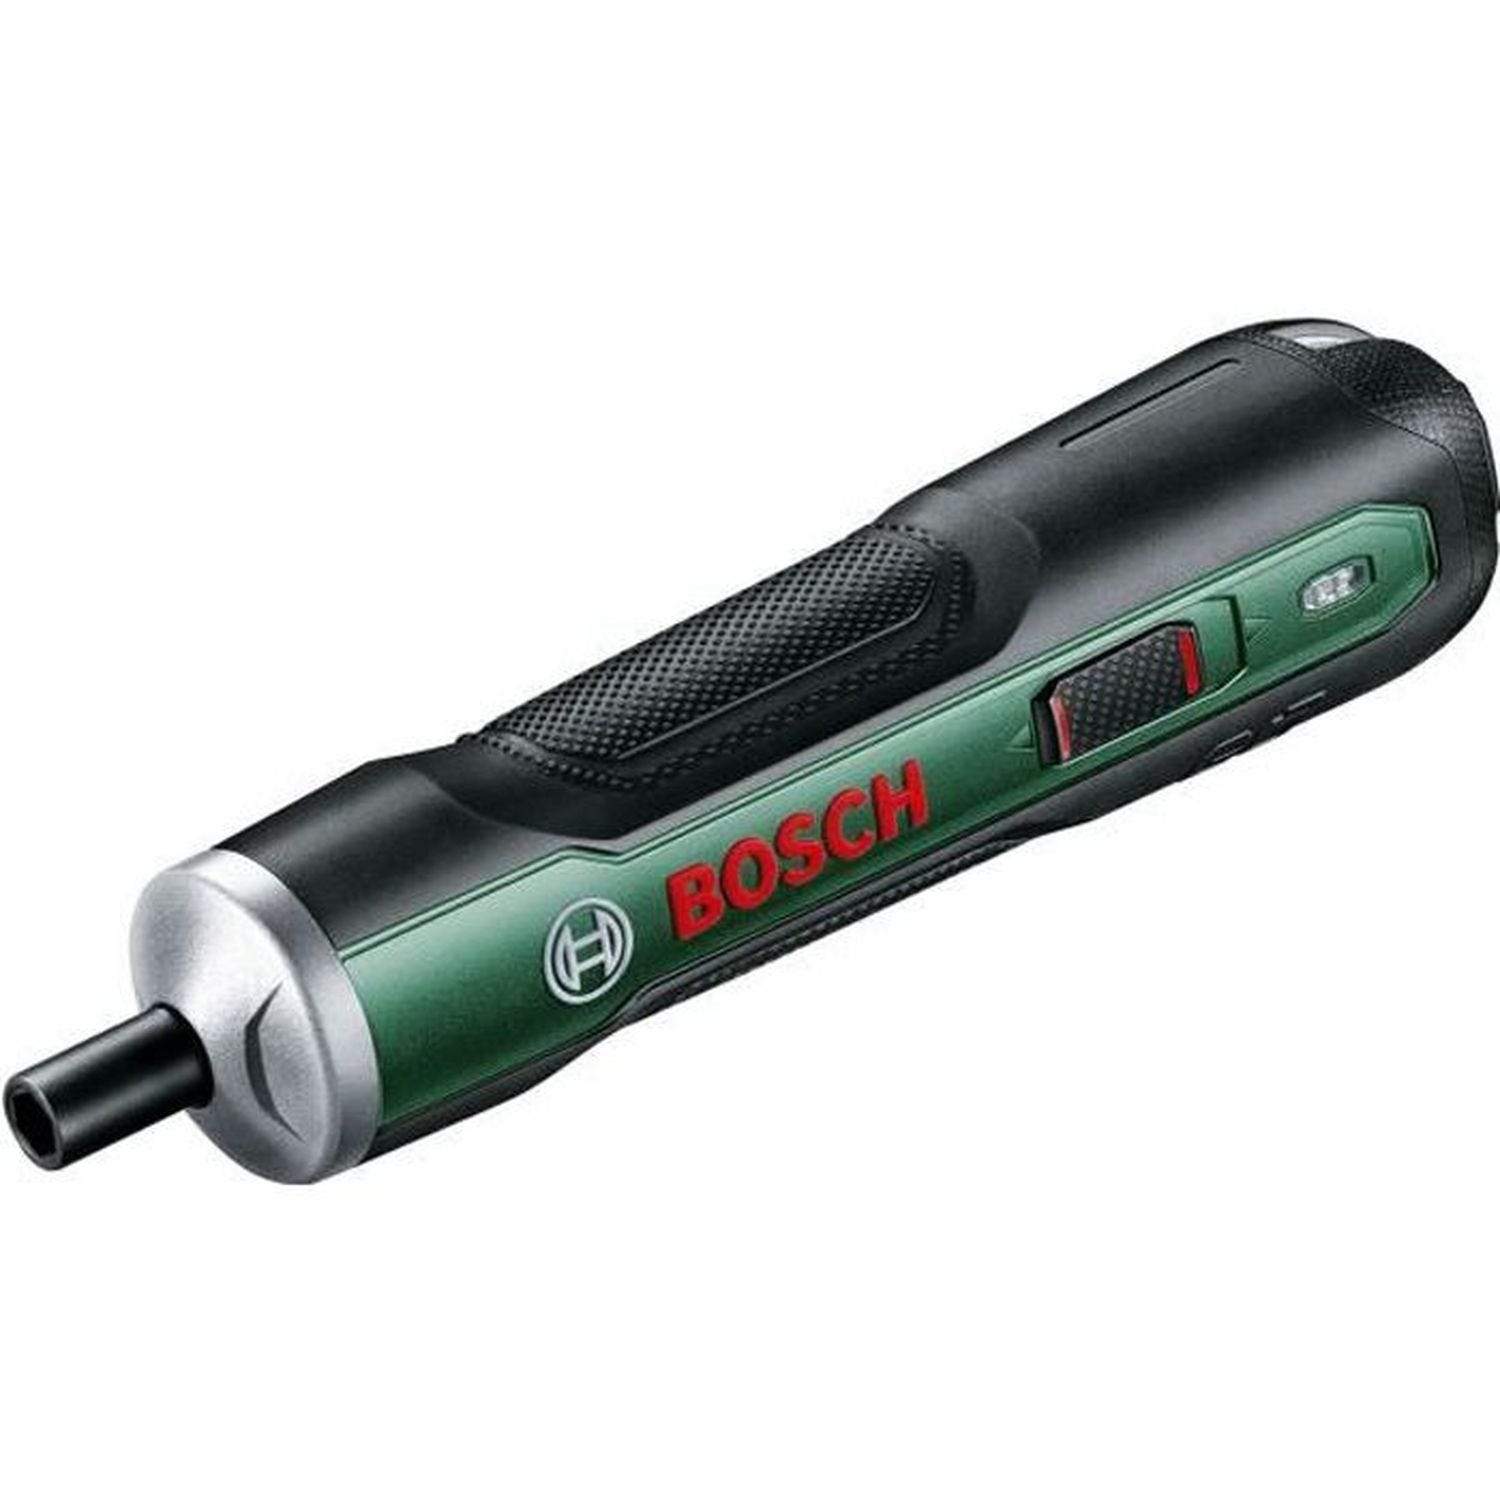 Visseuse sans fil ergonomique Bosch - PushDrive 3,6 V 1,5 Ah, recharge Micro USB, 32 embouts - Bosch 0